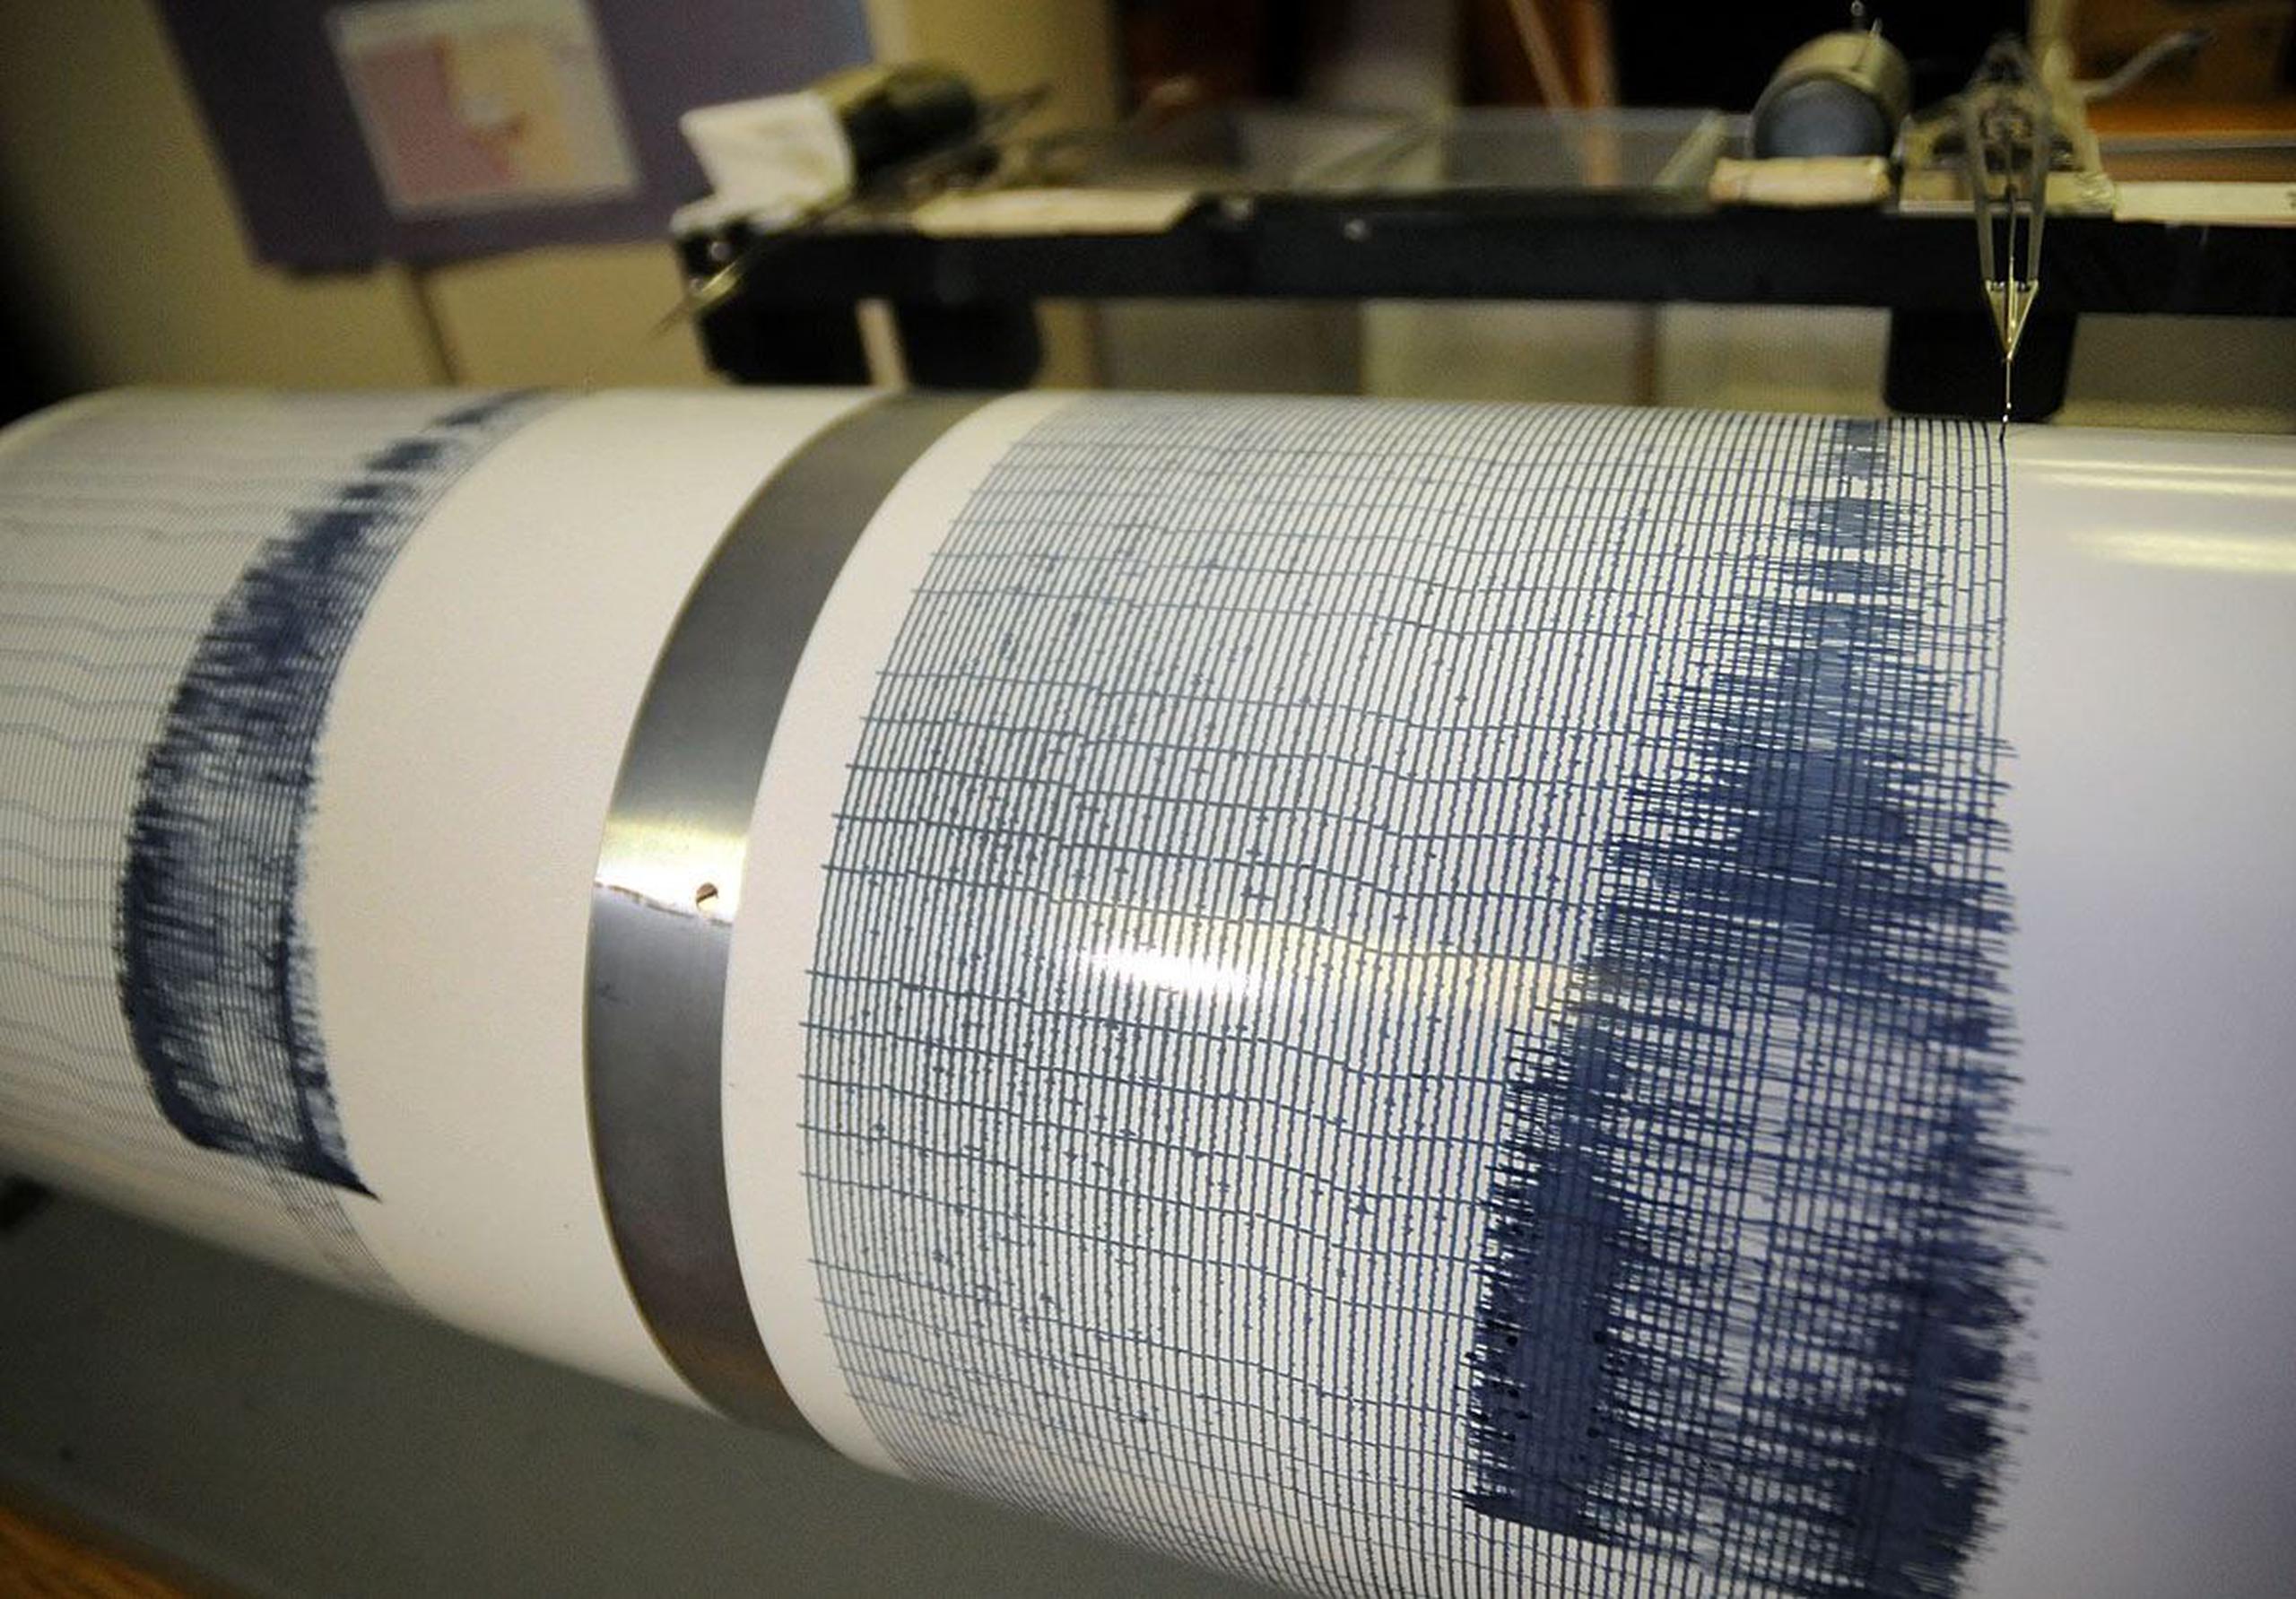 Los terremotos de hasta una magnitud 5 son frecuentes en varias regiones de Turquía y habitualmente no causan mayores daños.